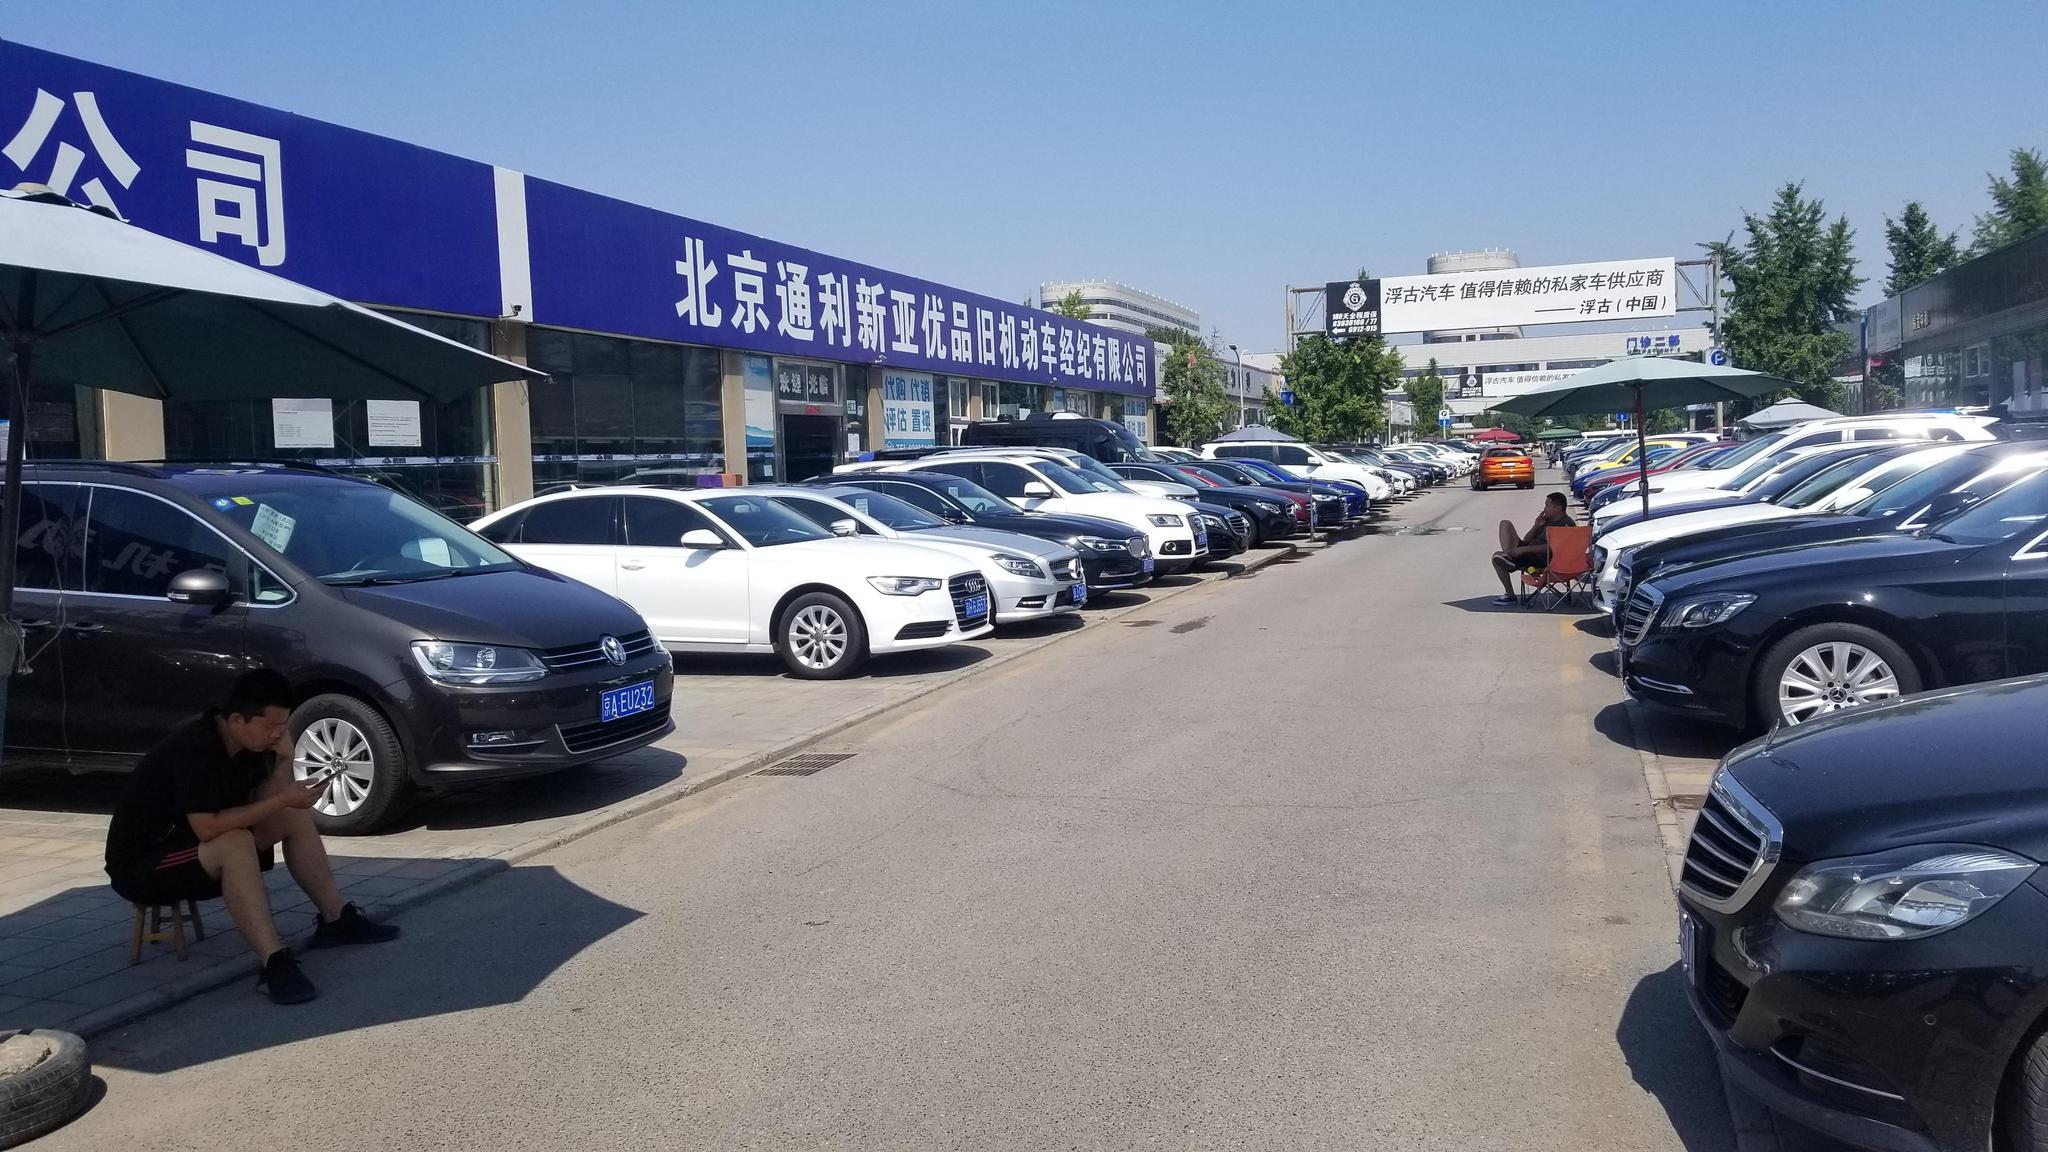 北京花乡二手车市交易量仍堪忧,有车商7月仅卖5辆车